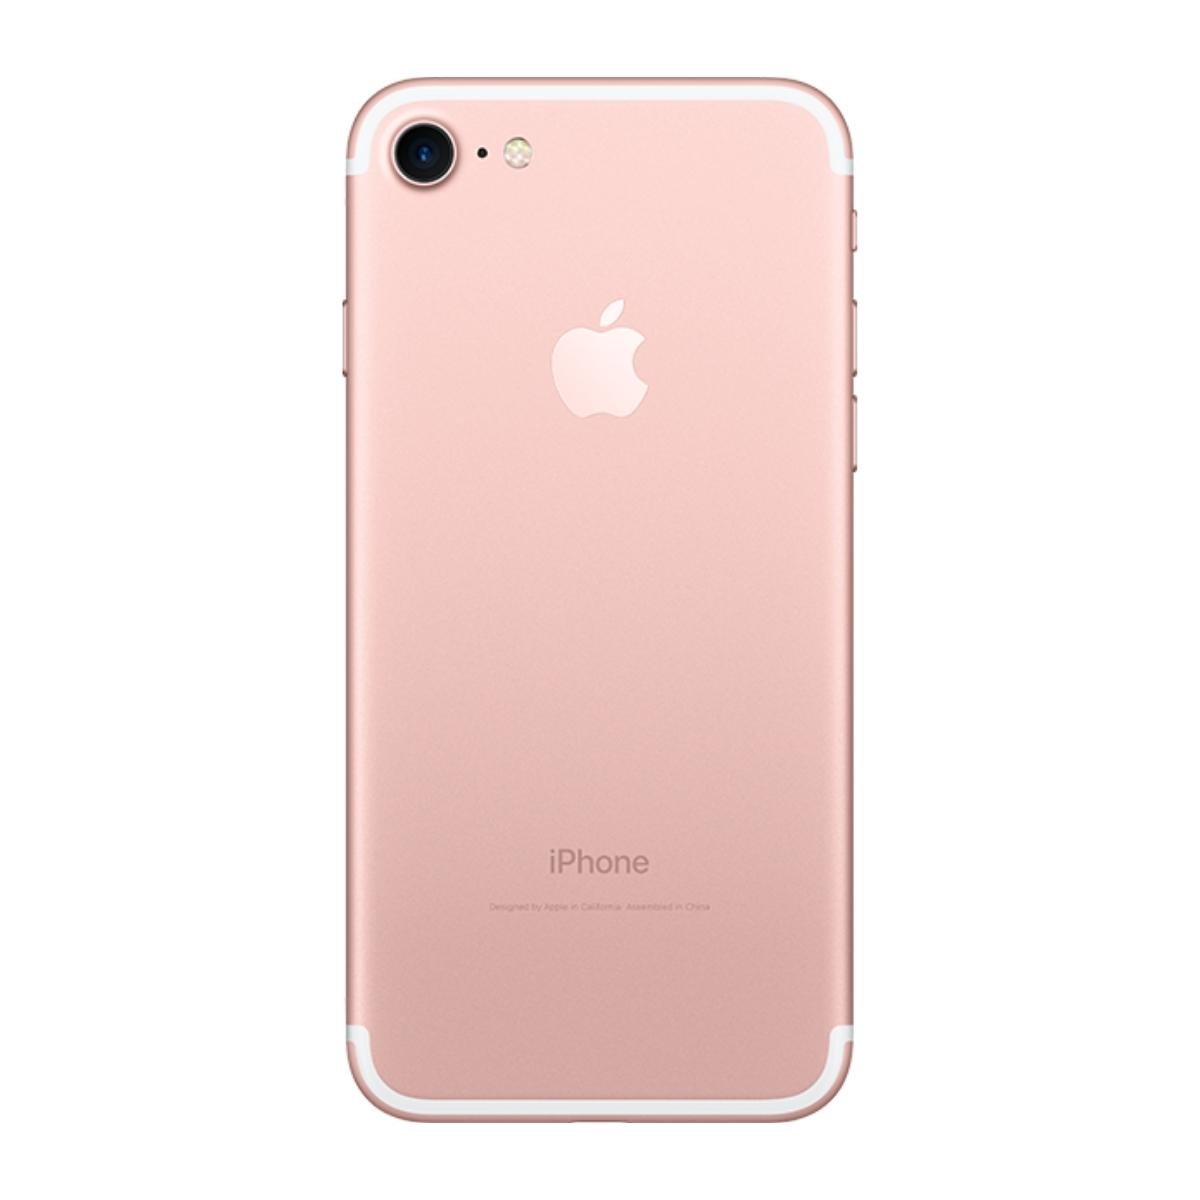 Mua Bán iPhone 7 32GB Cũ Đồng Nai Chính Hãng Giá Siêu Rẻ